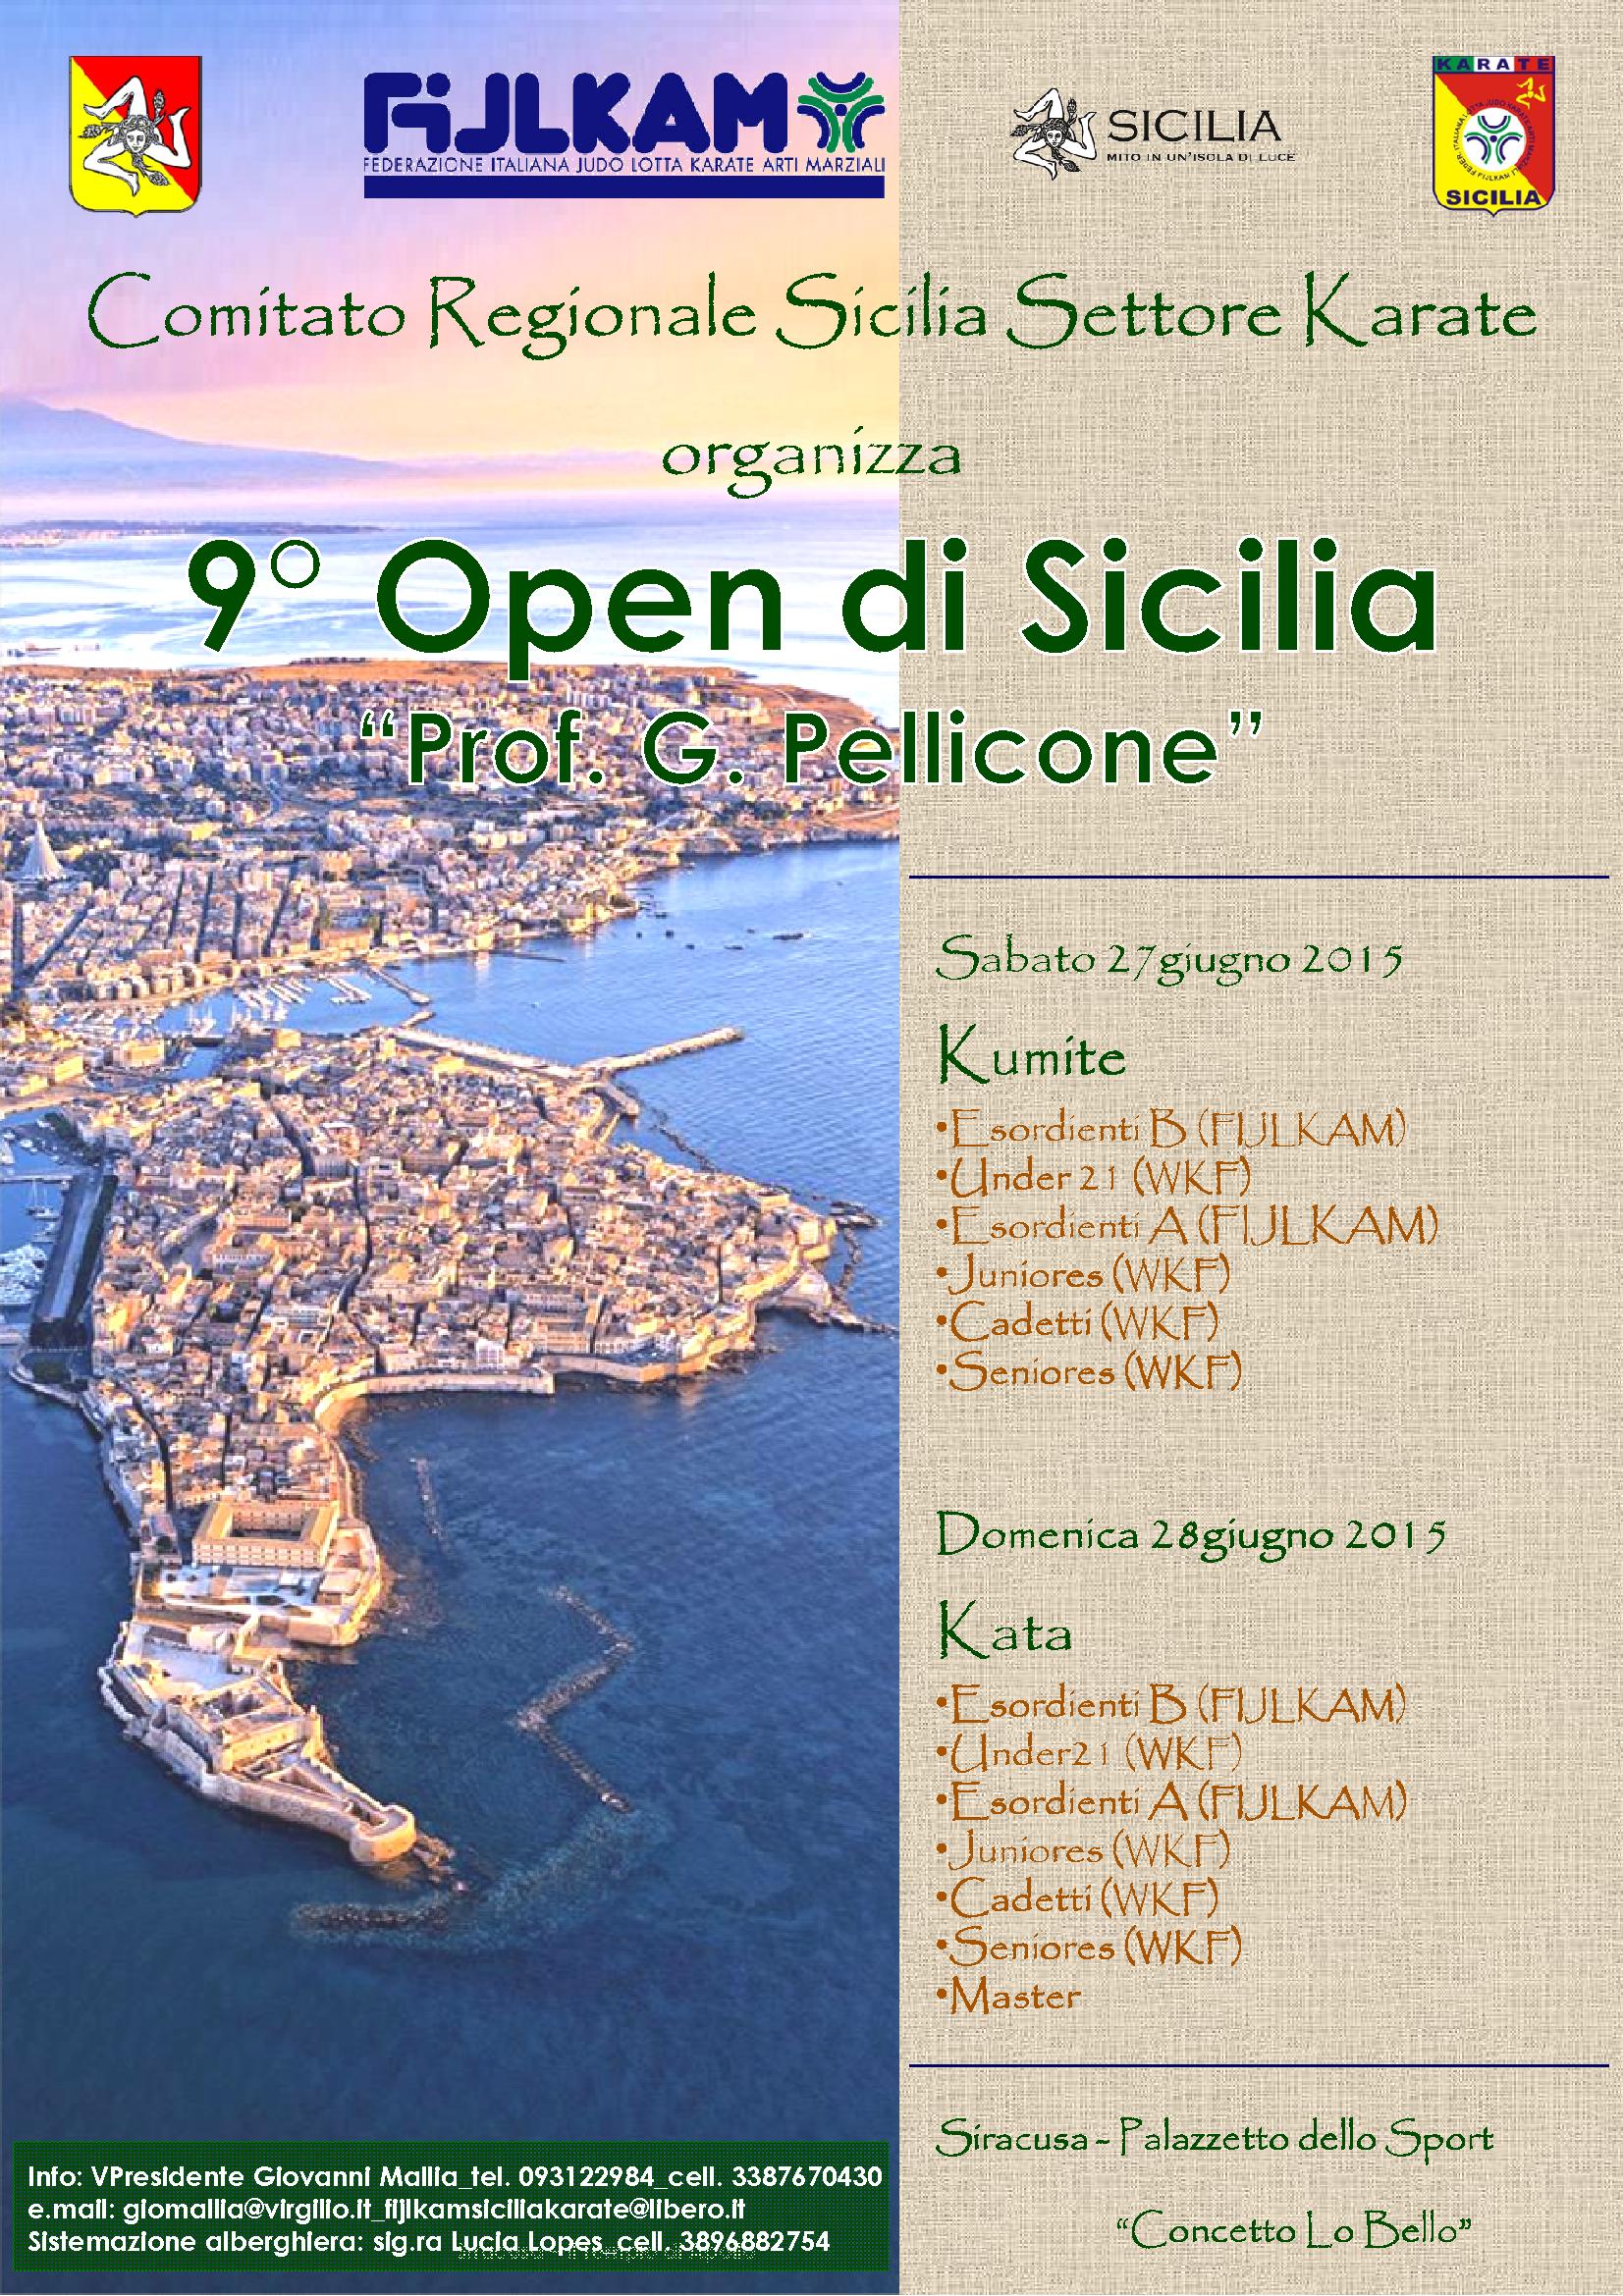 9° Open di Sicilia - Kumite. Siracusa 27 giugno 2015.